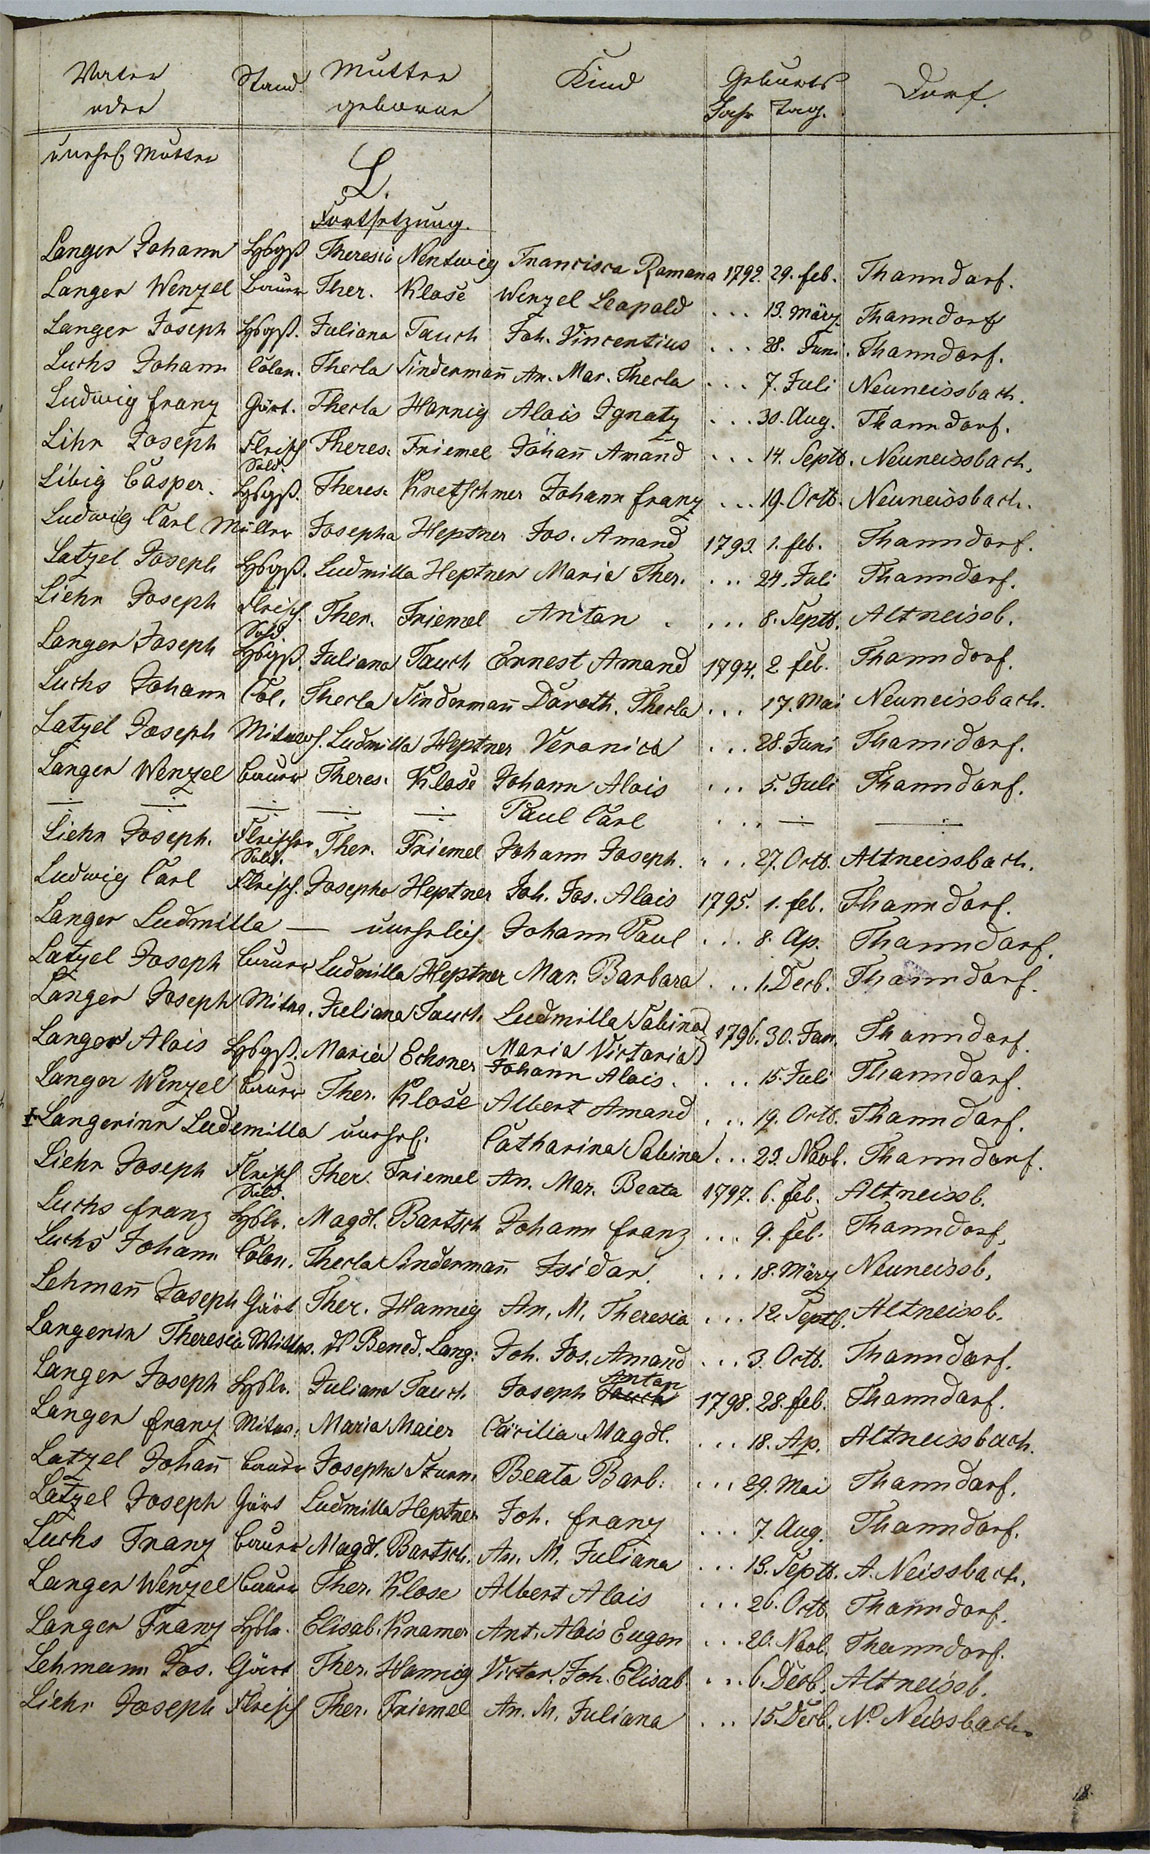 Taufregister 1770 - 1889 Seite 85